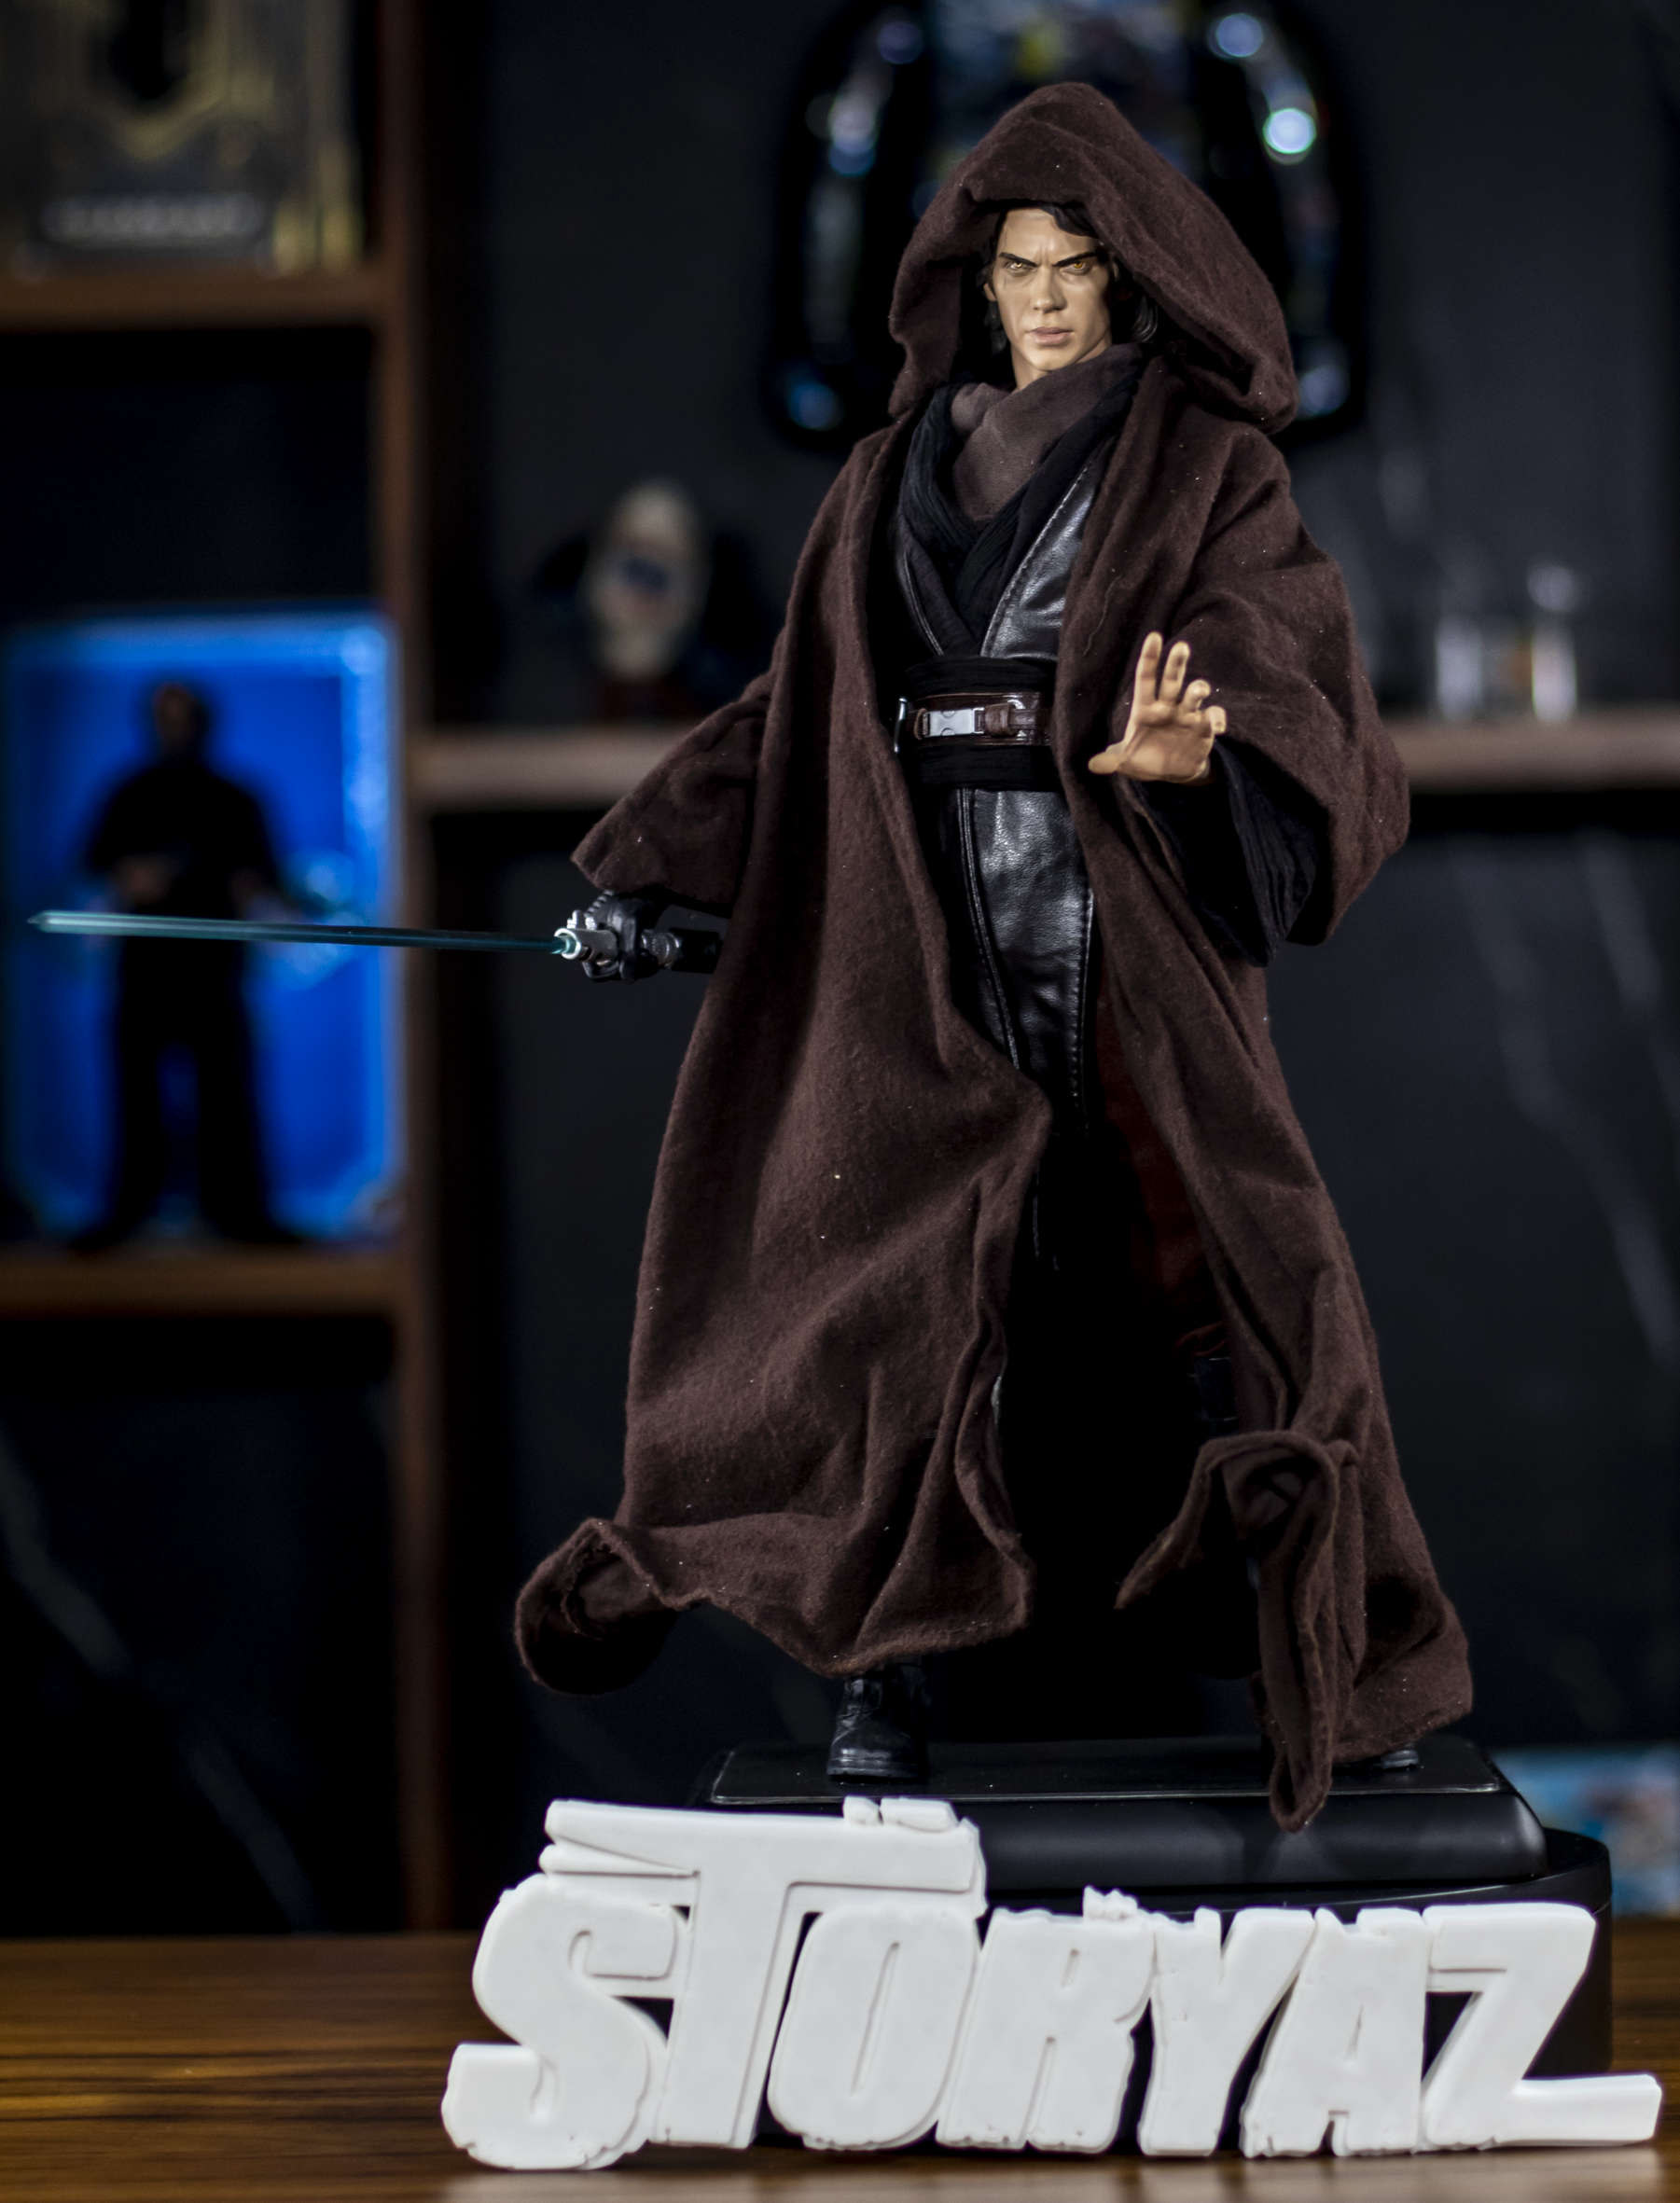 Star Wars: Sidesow "Anakin Skywalker" Premium Format Statue Exhibido